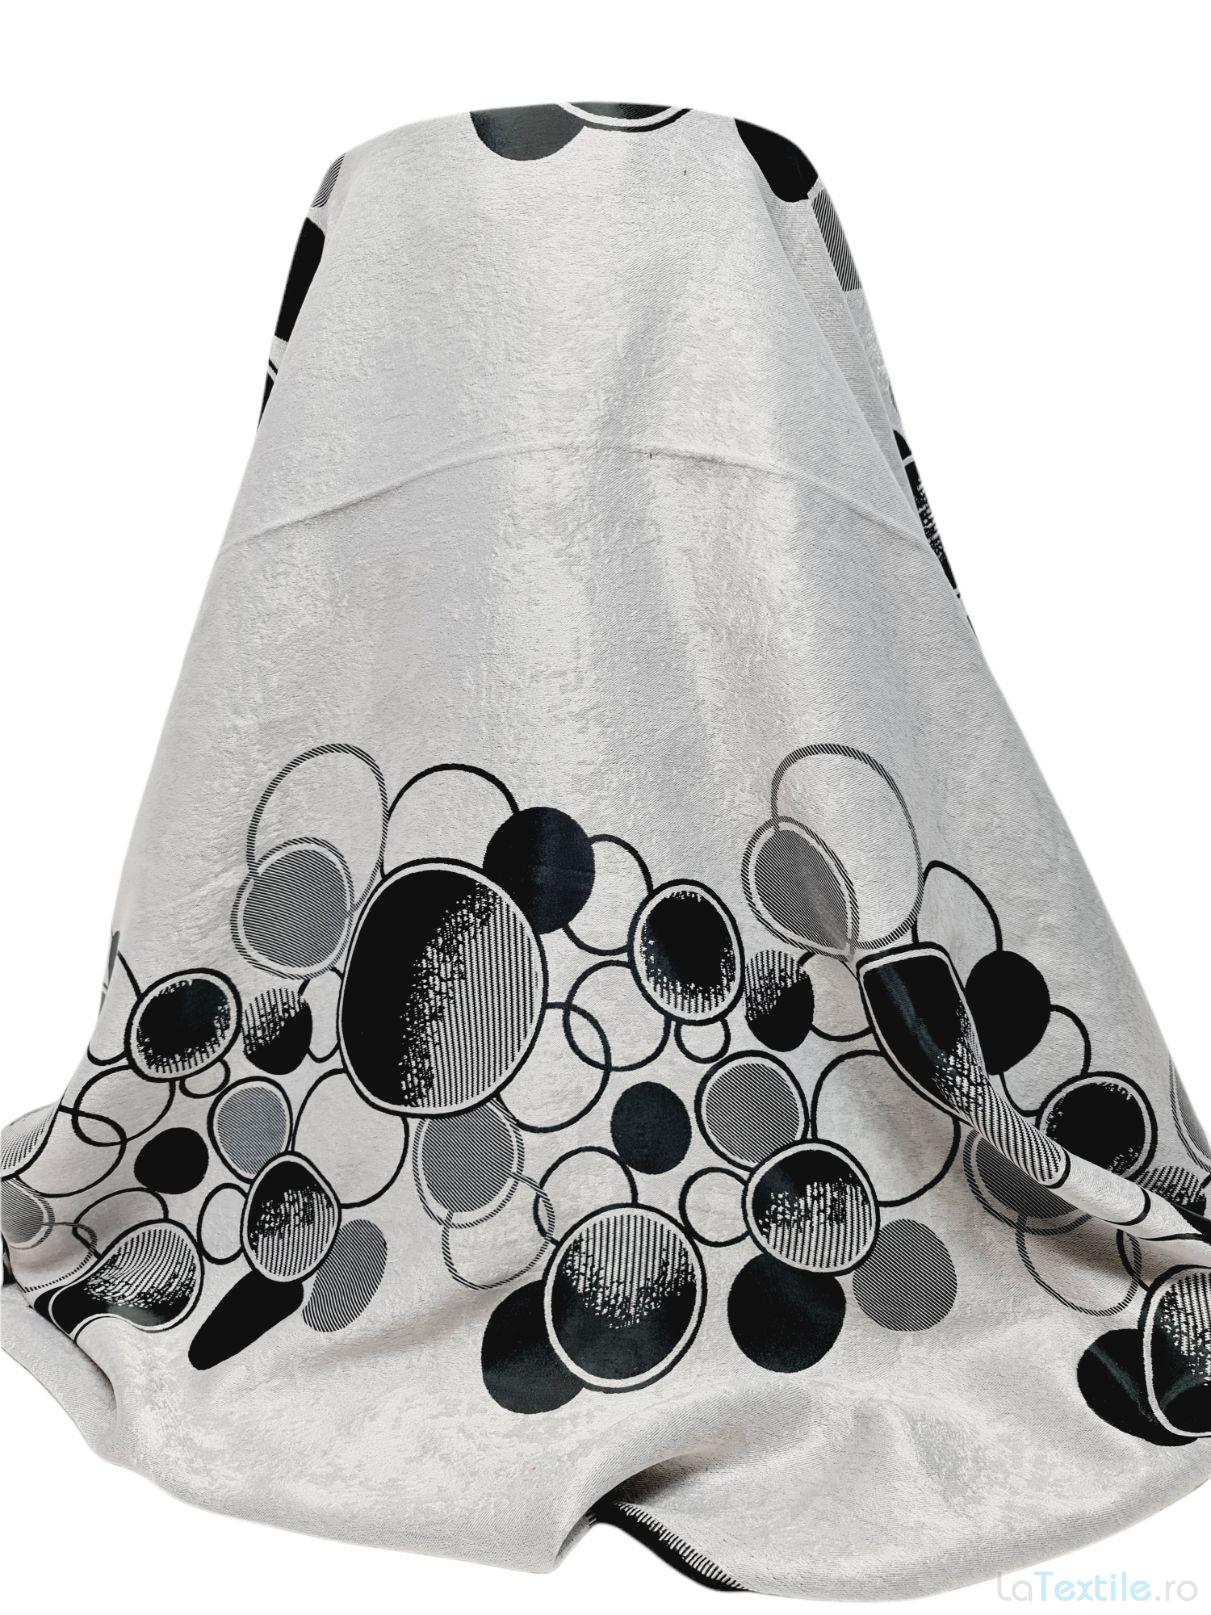 Material draperie cu 2 fete gri cu cercuri negre